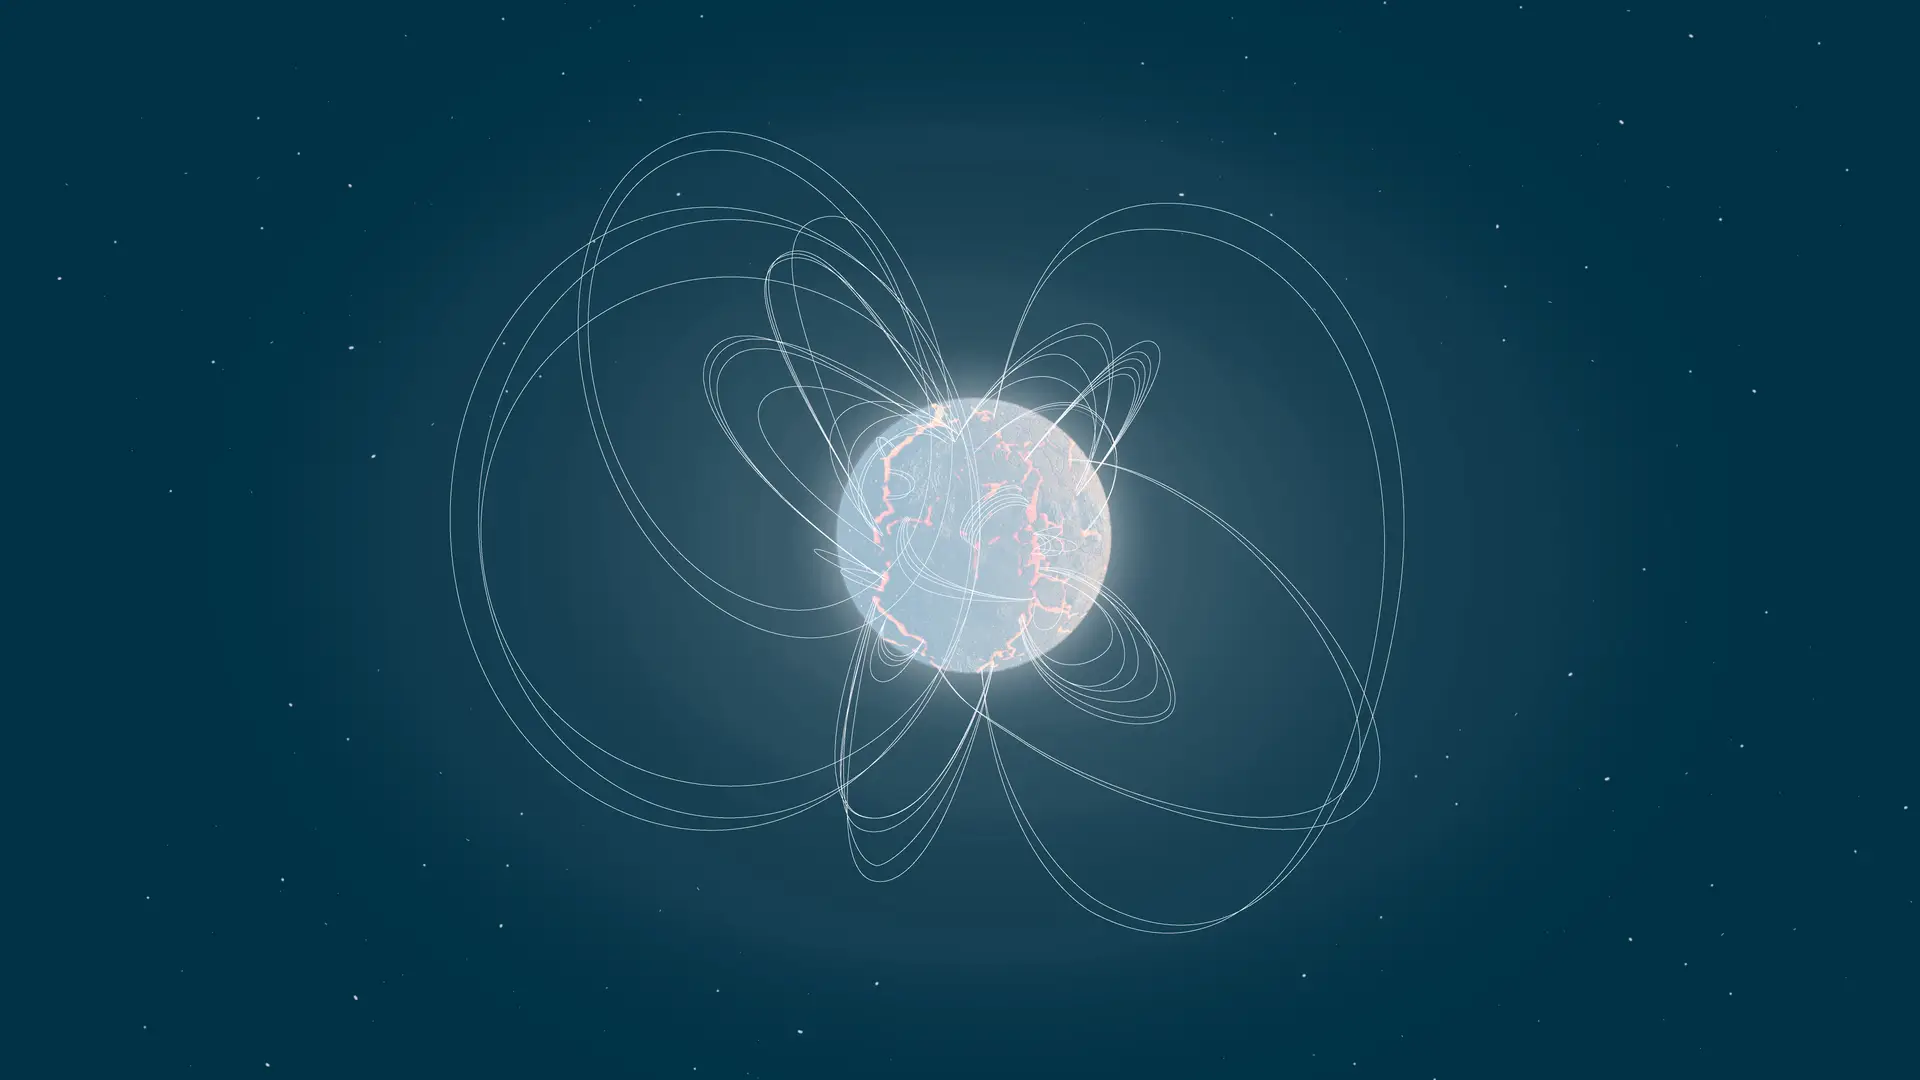 Ilustração de um magnetar, uma jovem estrela de neutrões com um campo magnético excecionalmente forte.